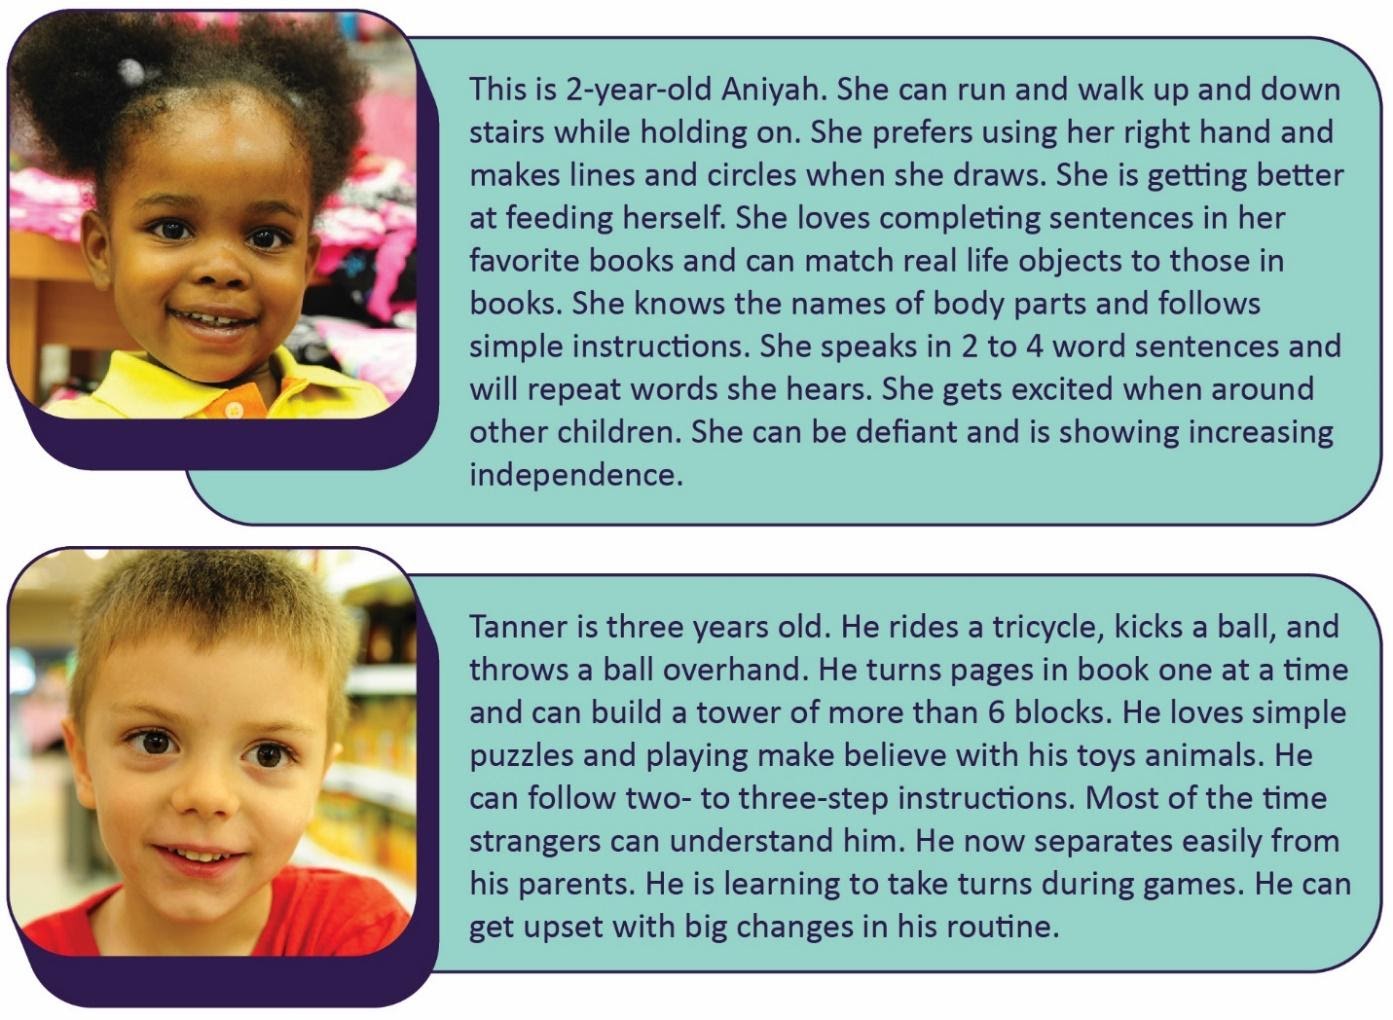 Una foto de Aniyah de 2 años y Tanner de 3 años con descripciones de sus personalidades.